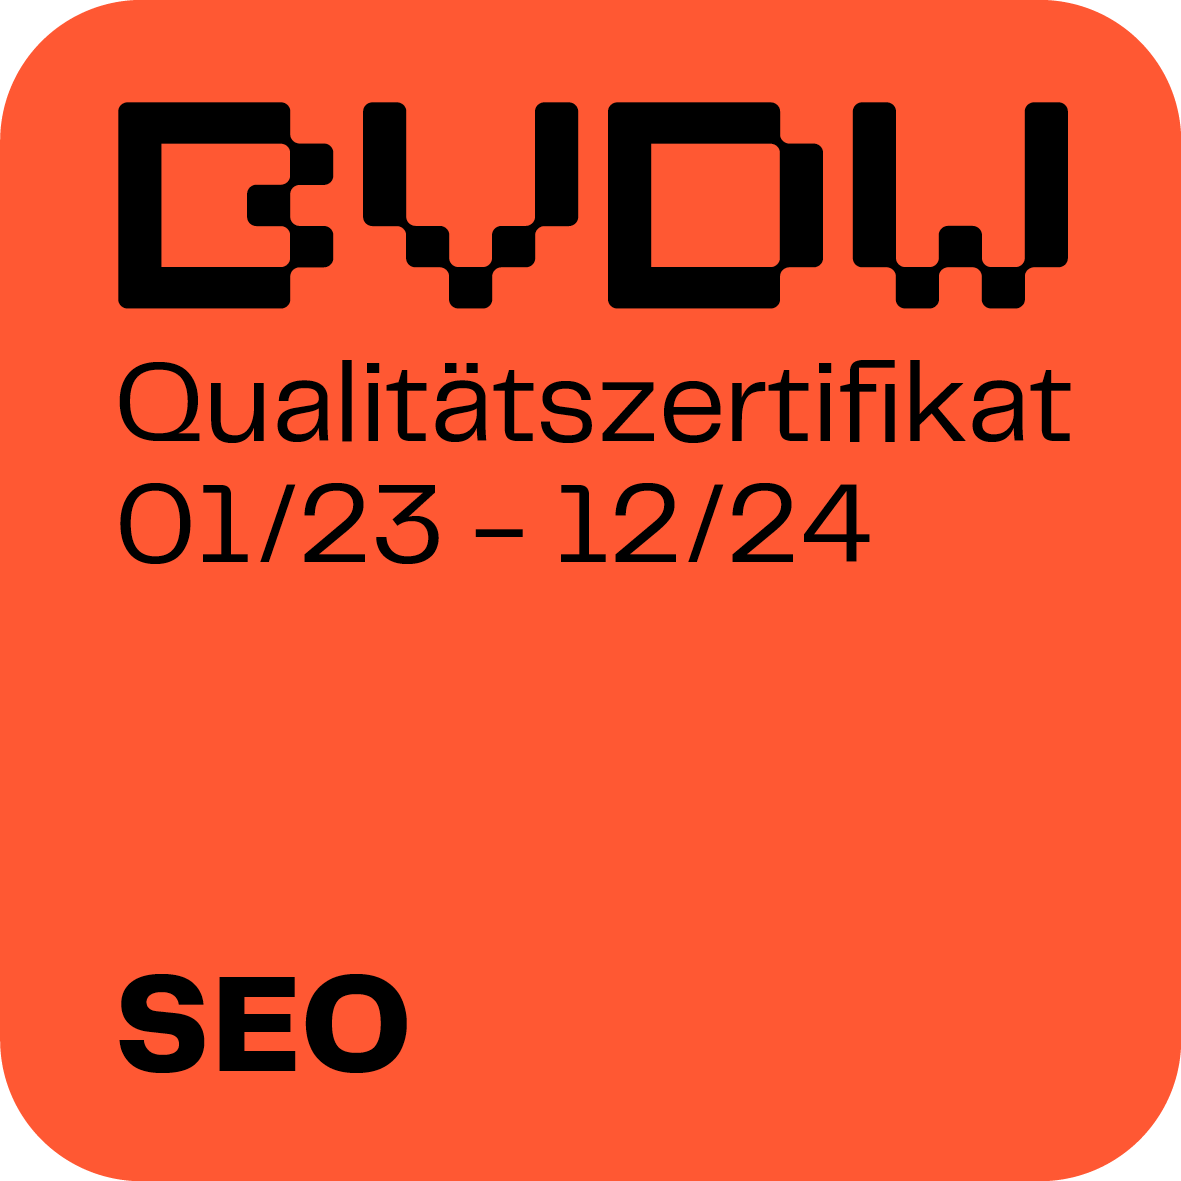 Qualitätssiegel des Bundesverbands für digitale Wirtschaft (BVDW) im SEO